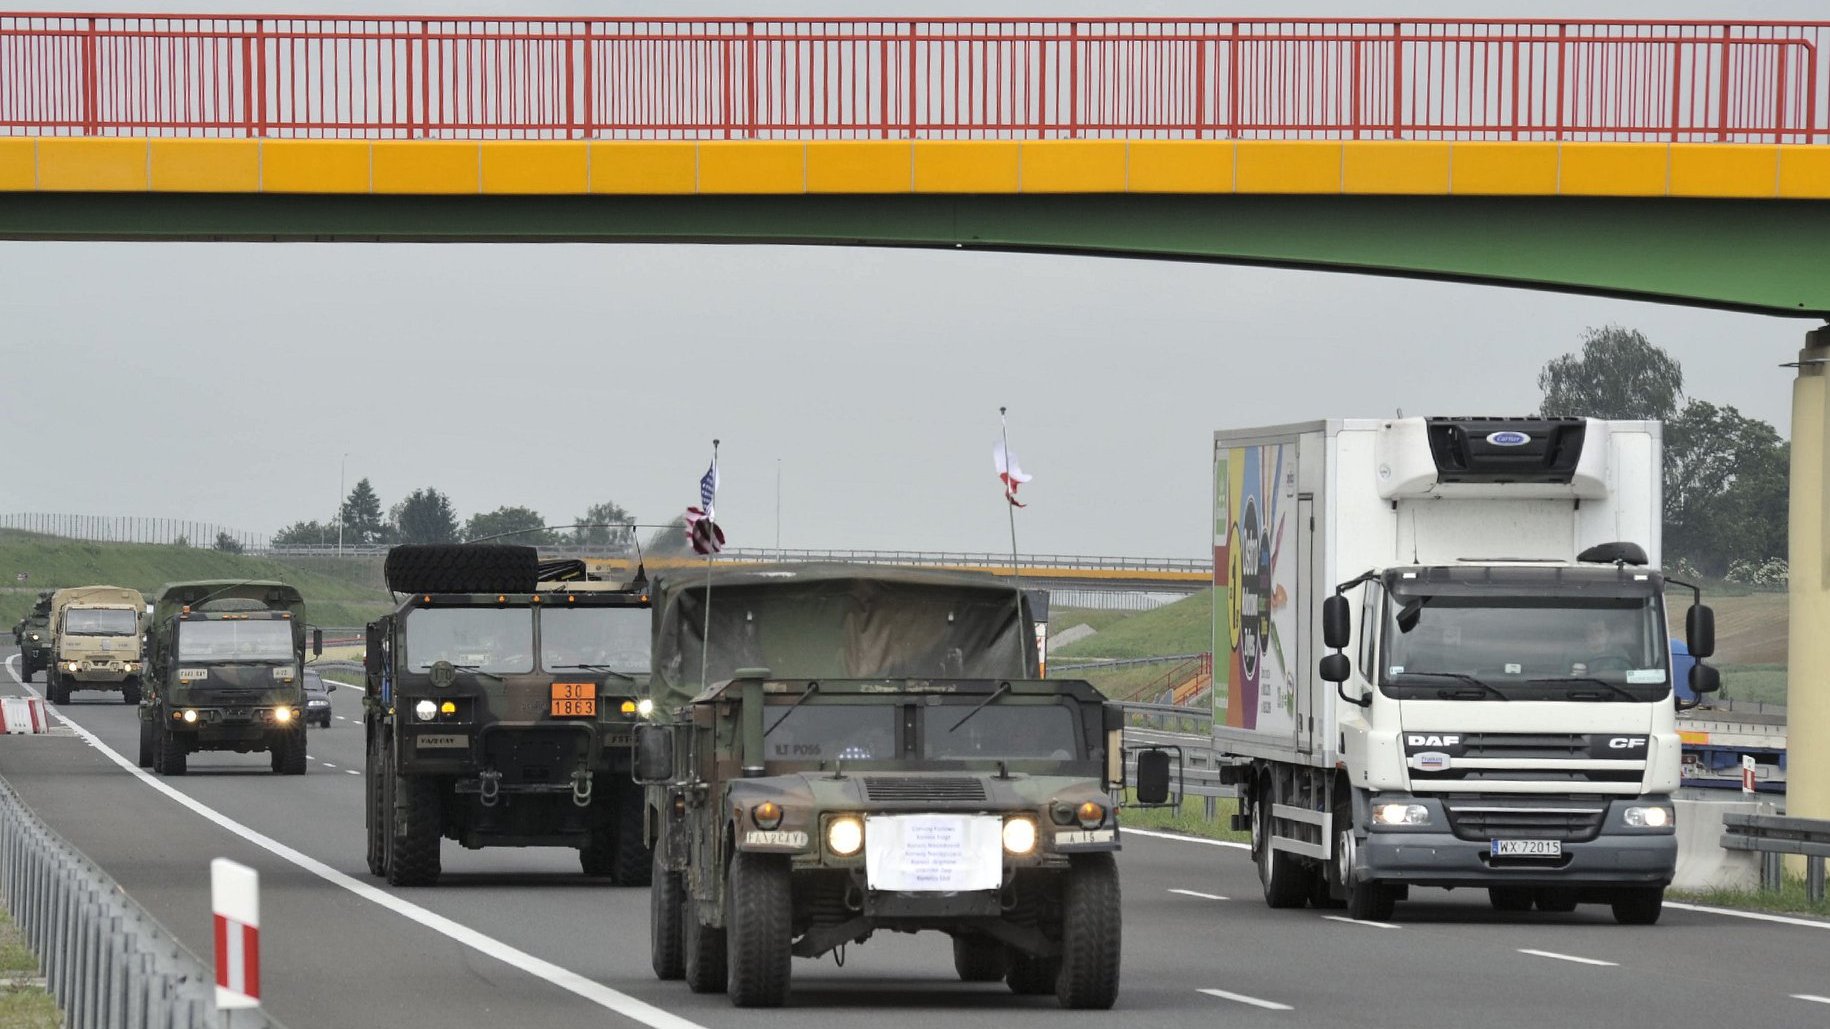 Na zdjęciu widać samochody wojskowe na drodze.